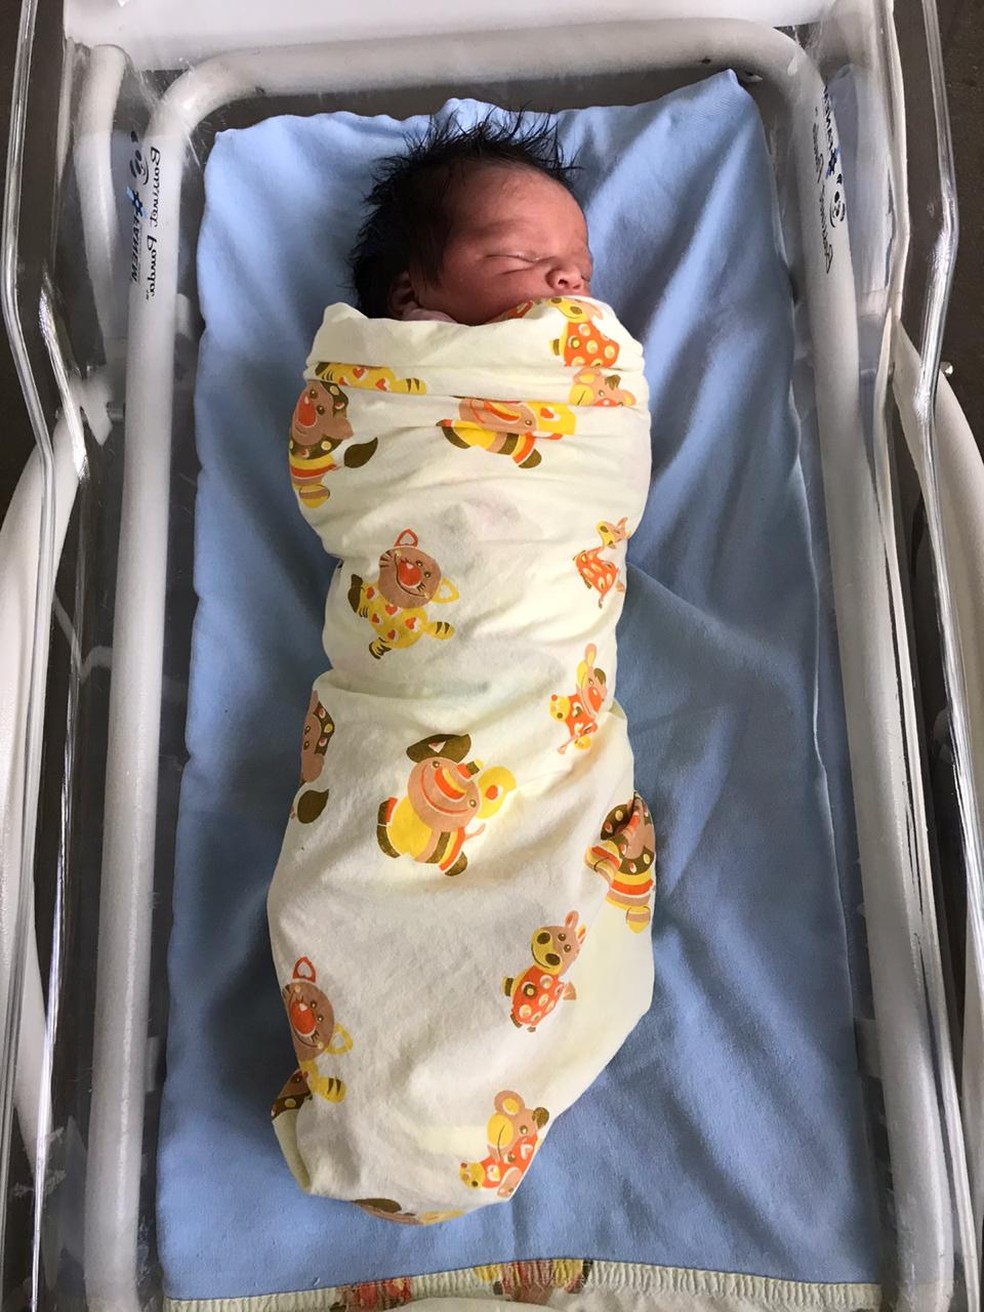 Primeiro bebê nascido no Centro de Parto Normal em Sidrolândia é um menino  - Sidrolândia - Região News